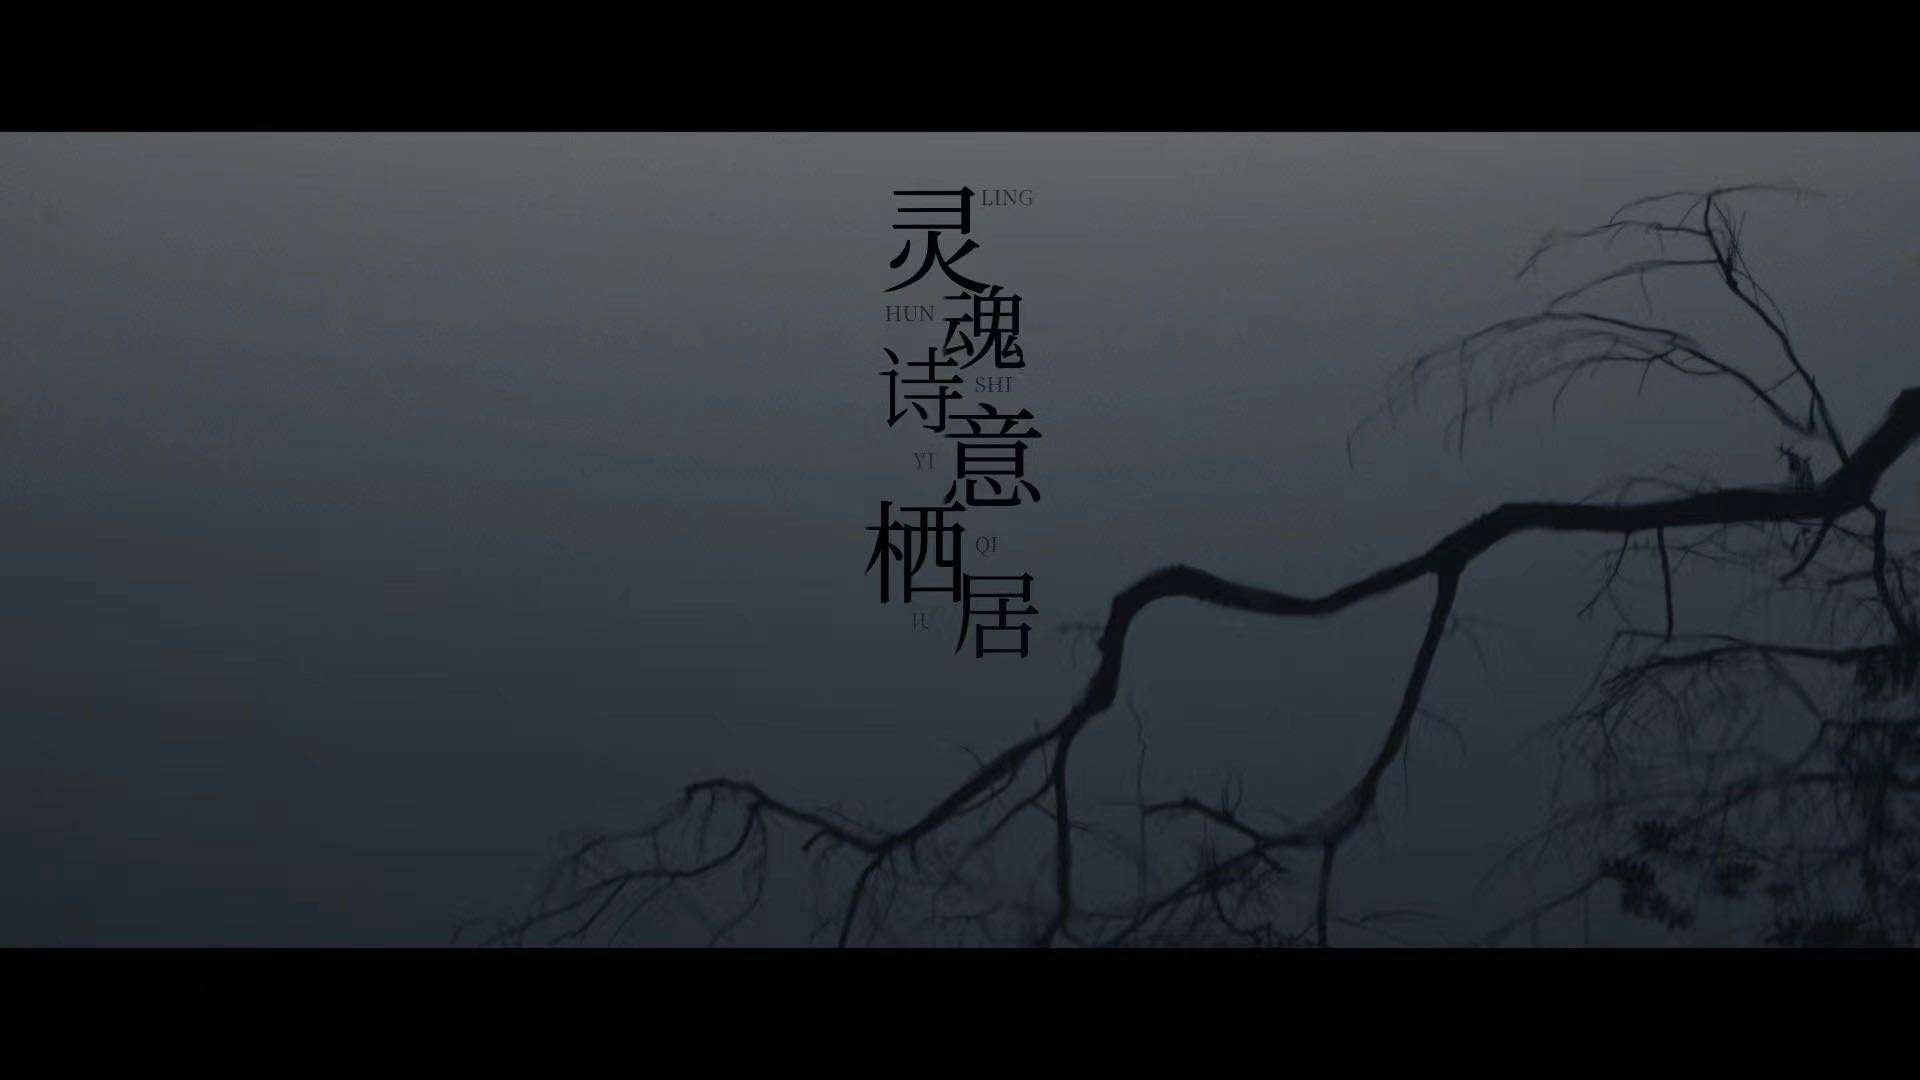 韩国艺术家申智惠x《灵魂诗意栖居》展览纪录片